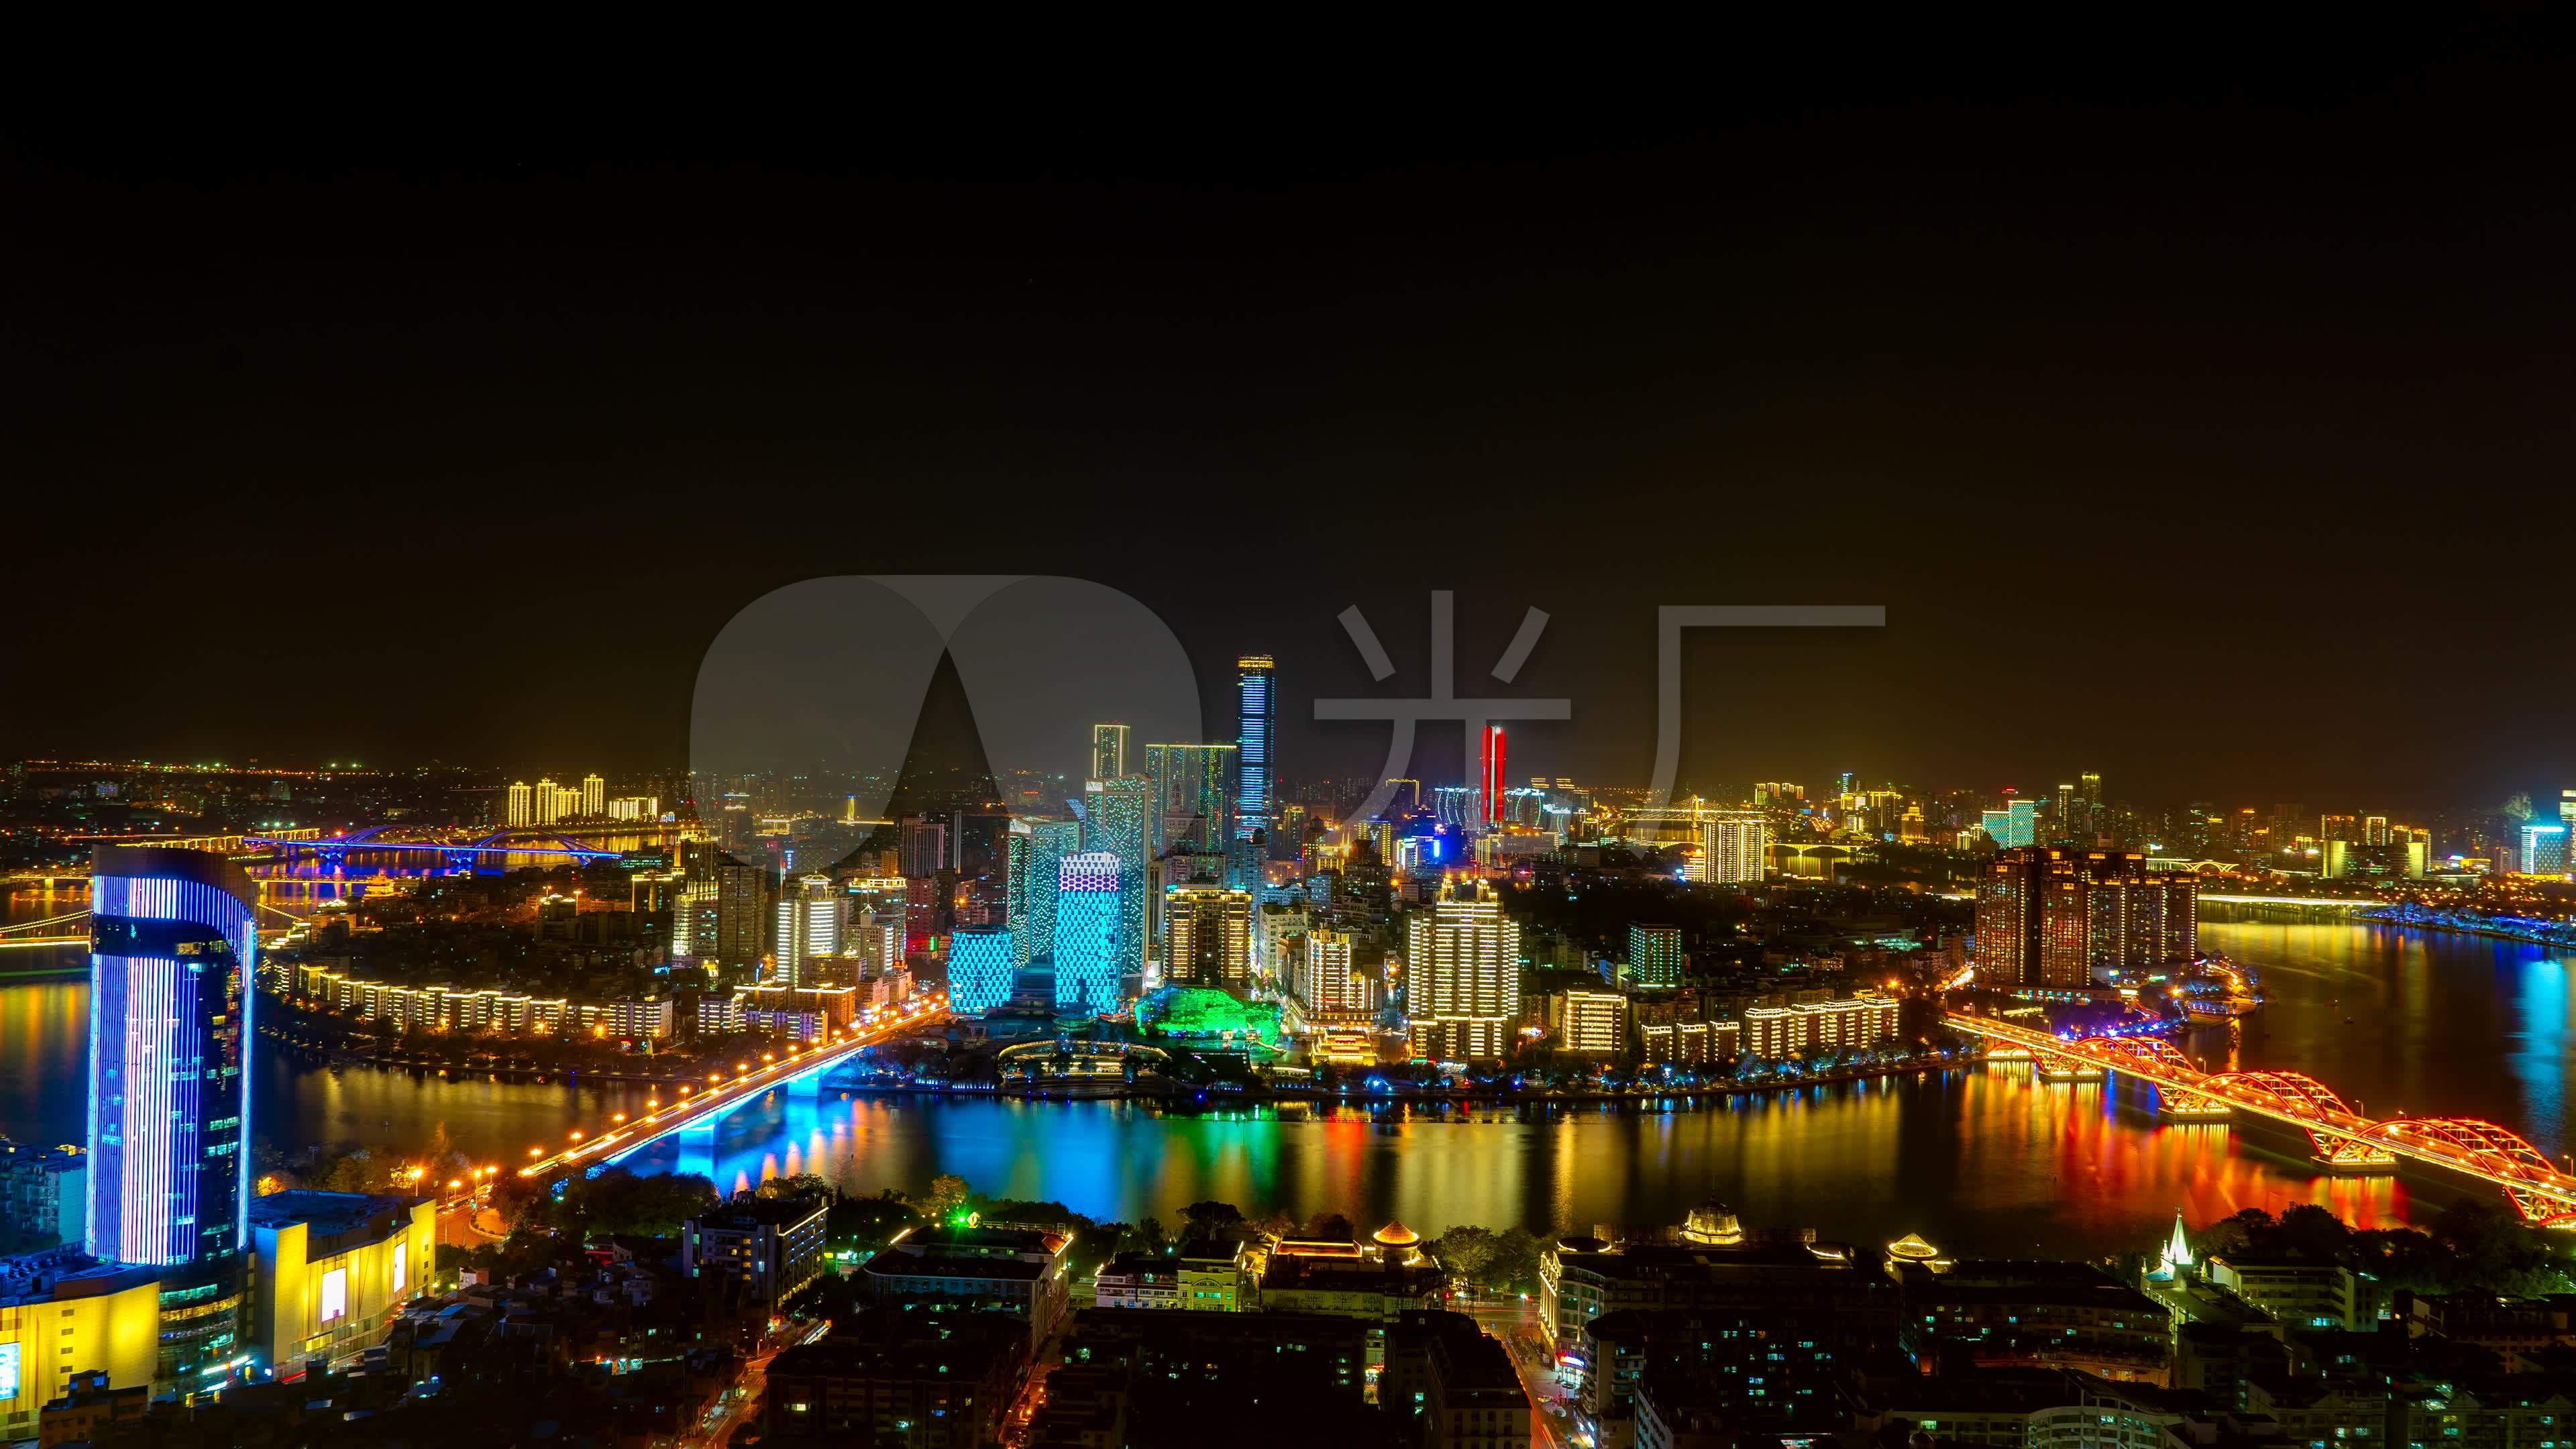 柳州夜景图片高清图片,广西柳州全景 - 伤感说说吧